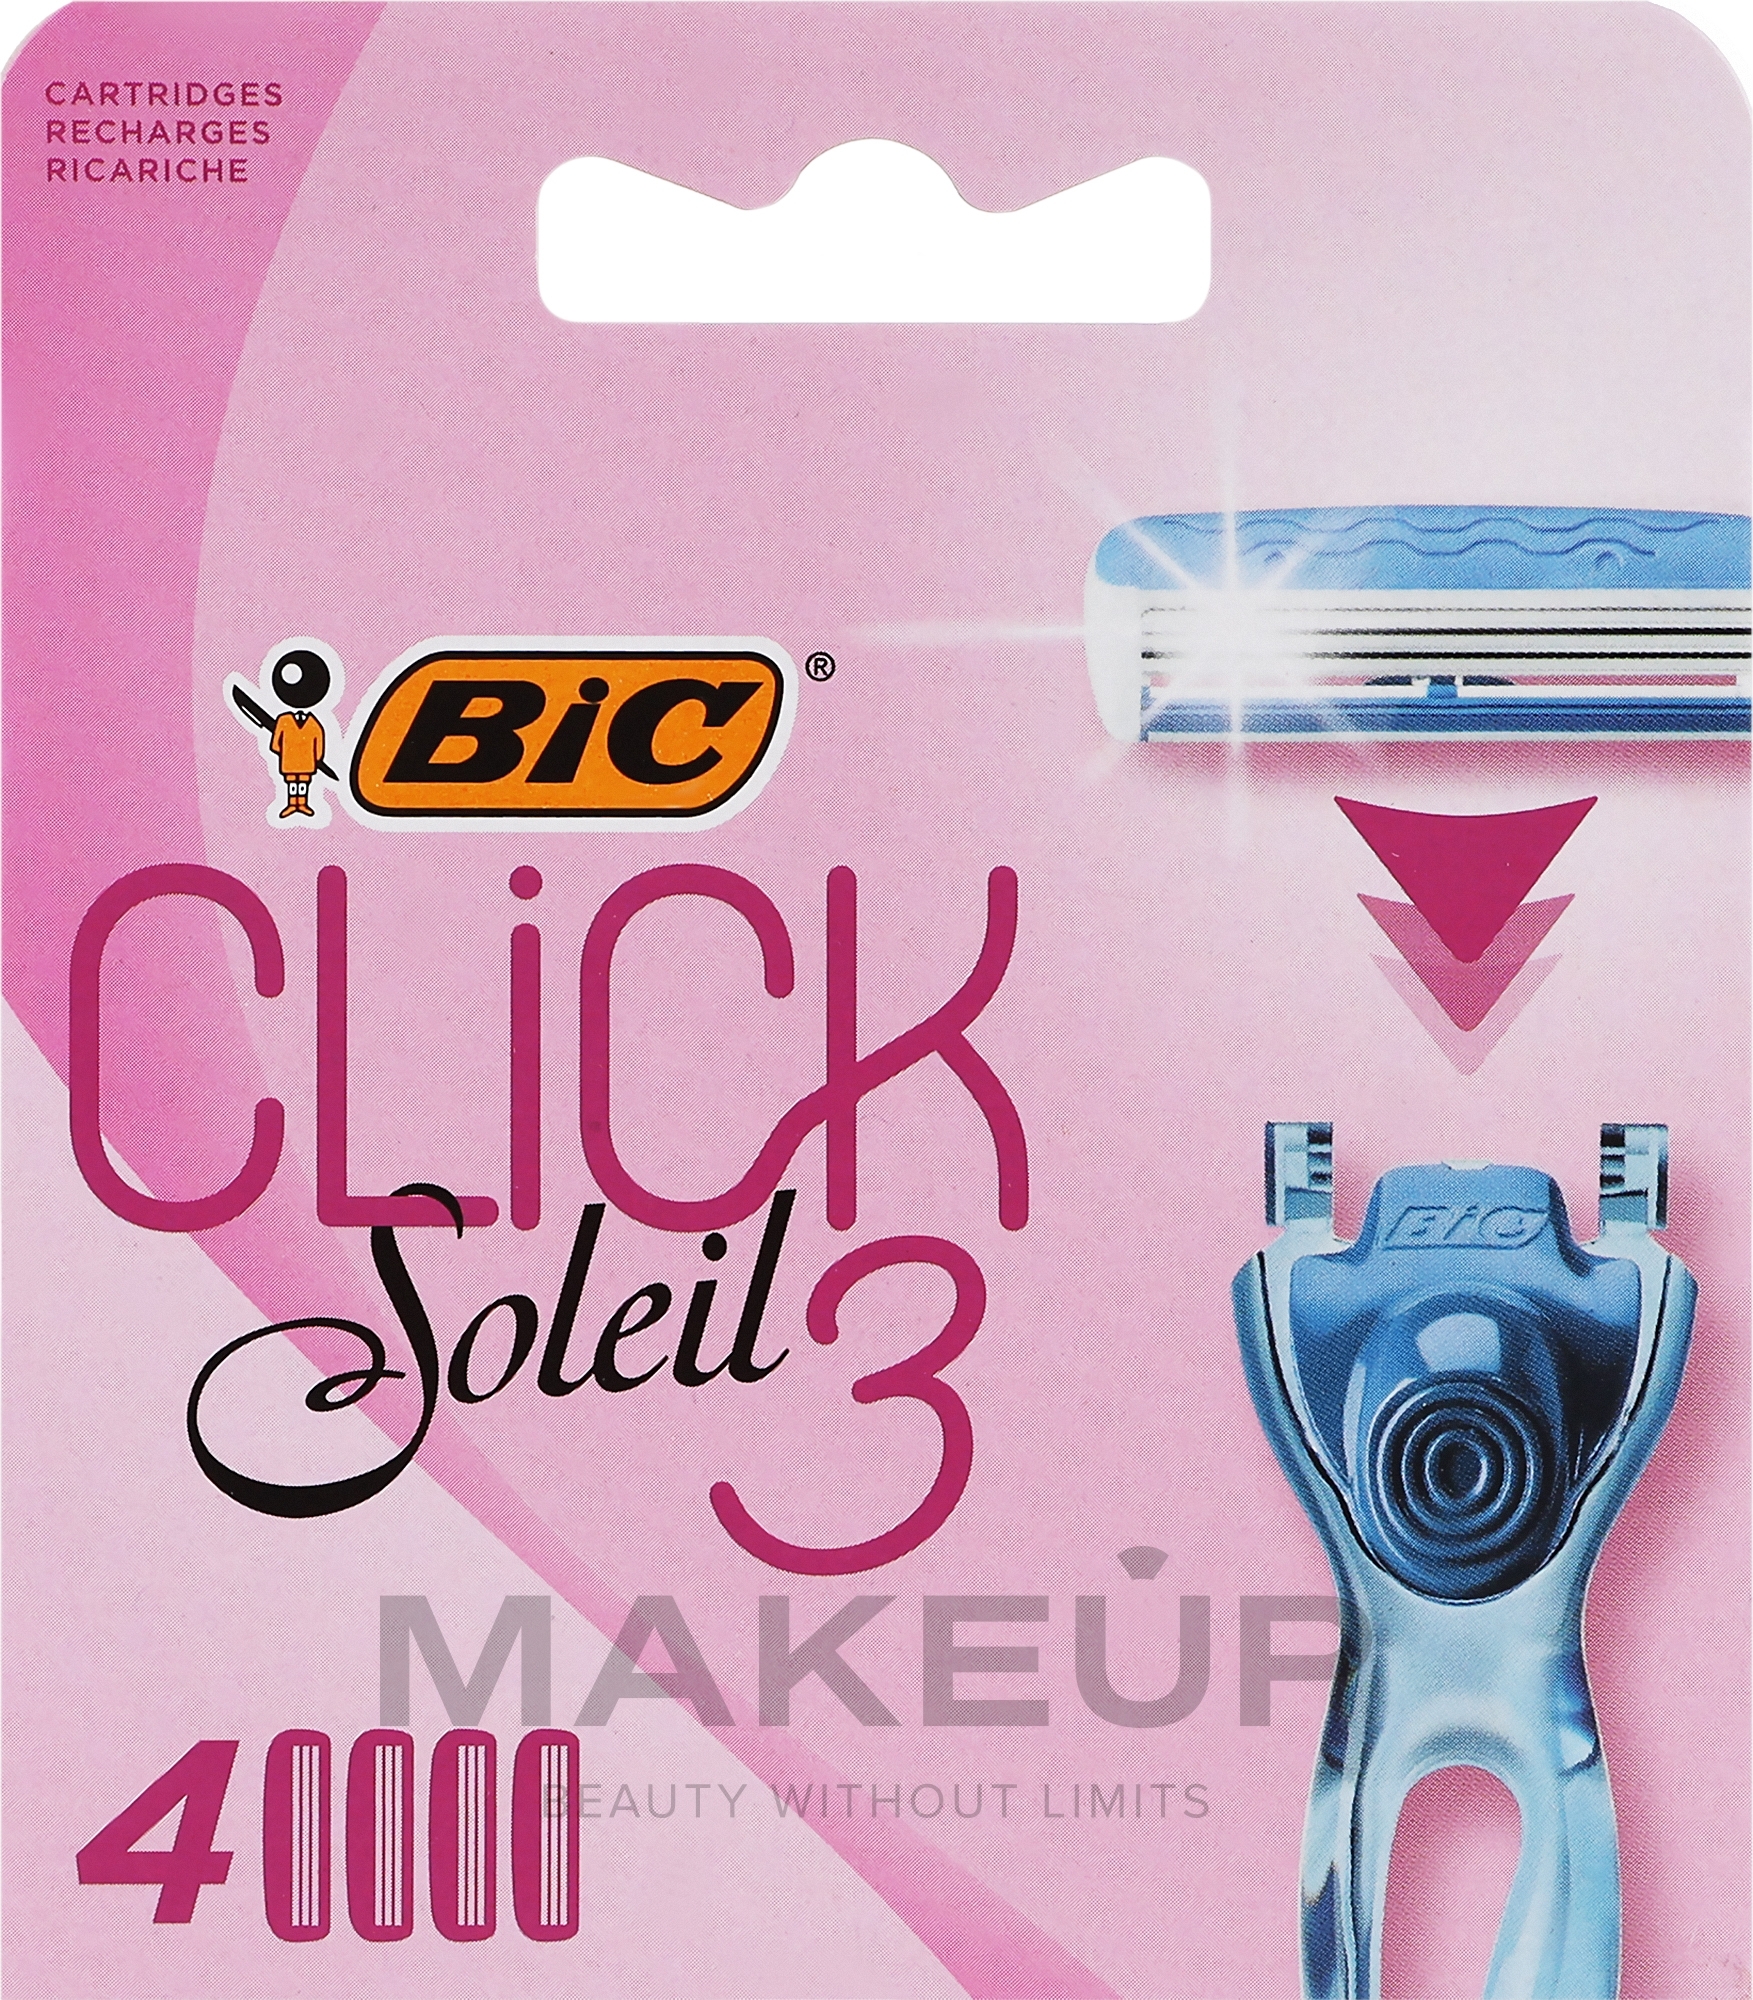 Wymienne wkłady do maszynki do golenia, 4 szt. - Bic Click 3 Soleil — Zdjęcie 4 szt.